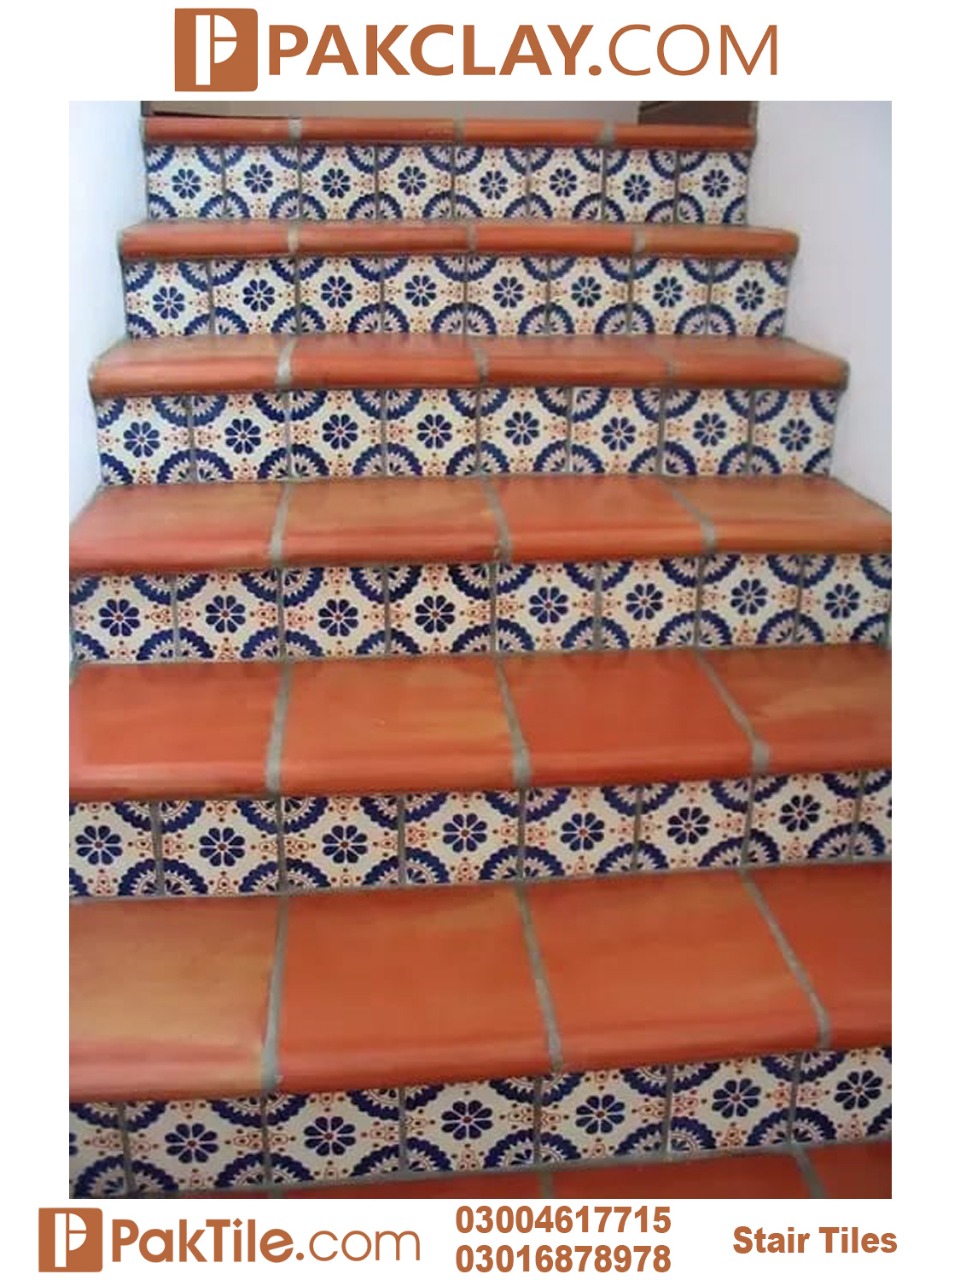 Stair Tiles Price in Rawalpindi